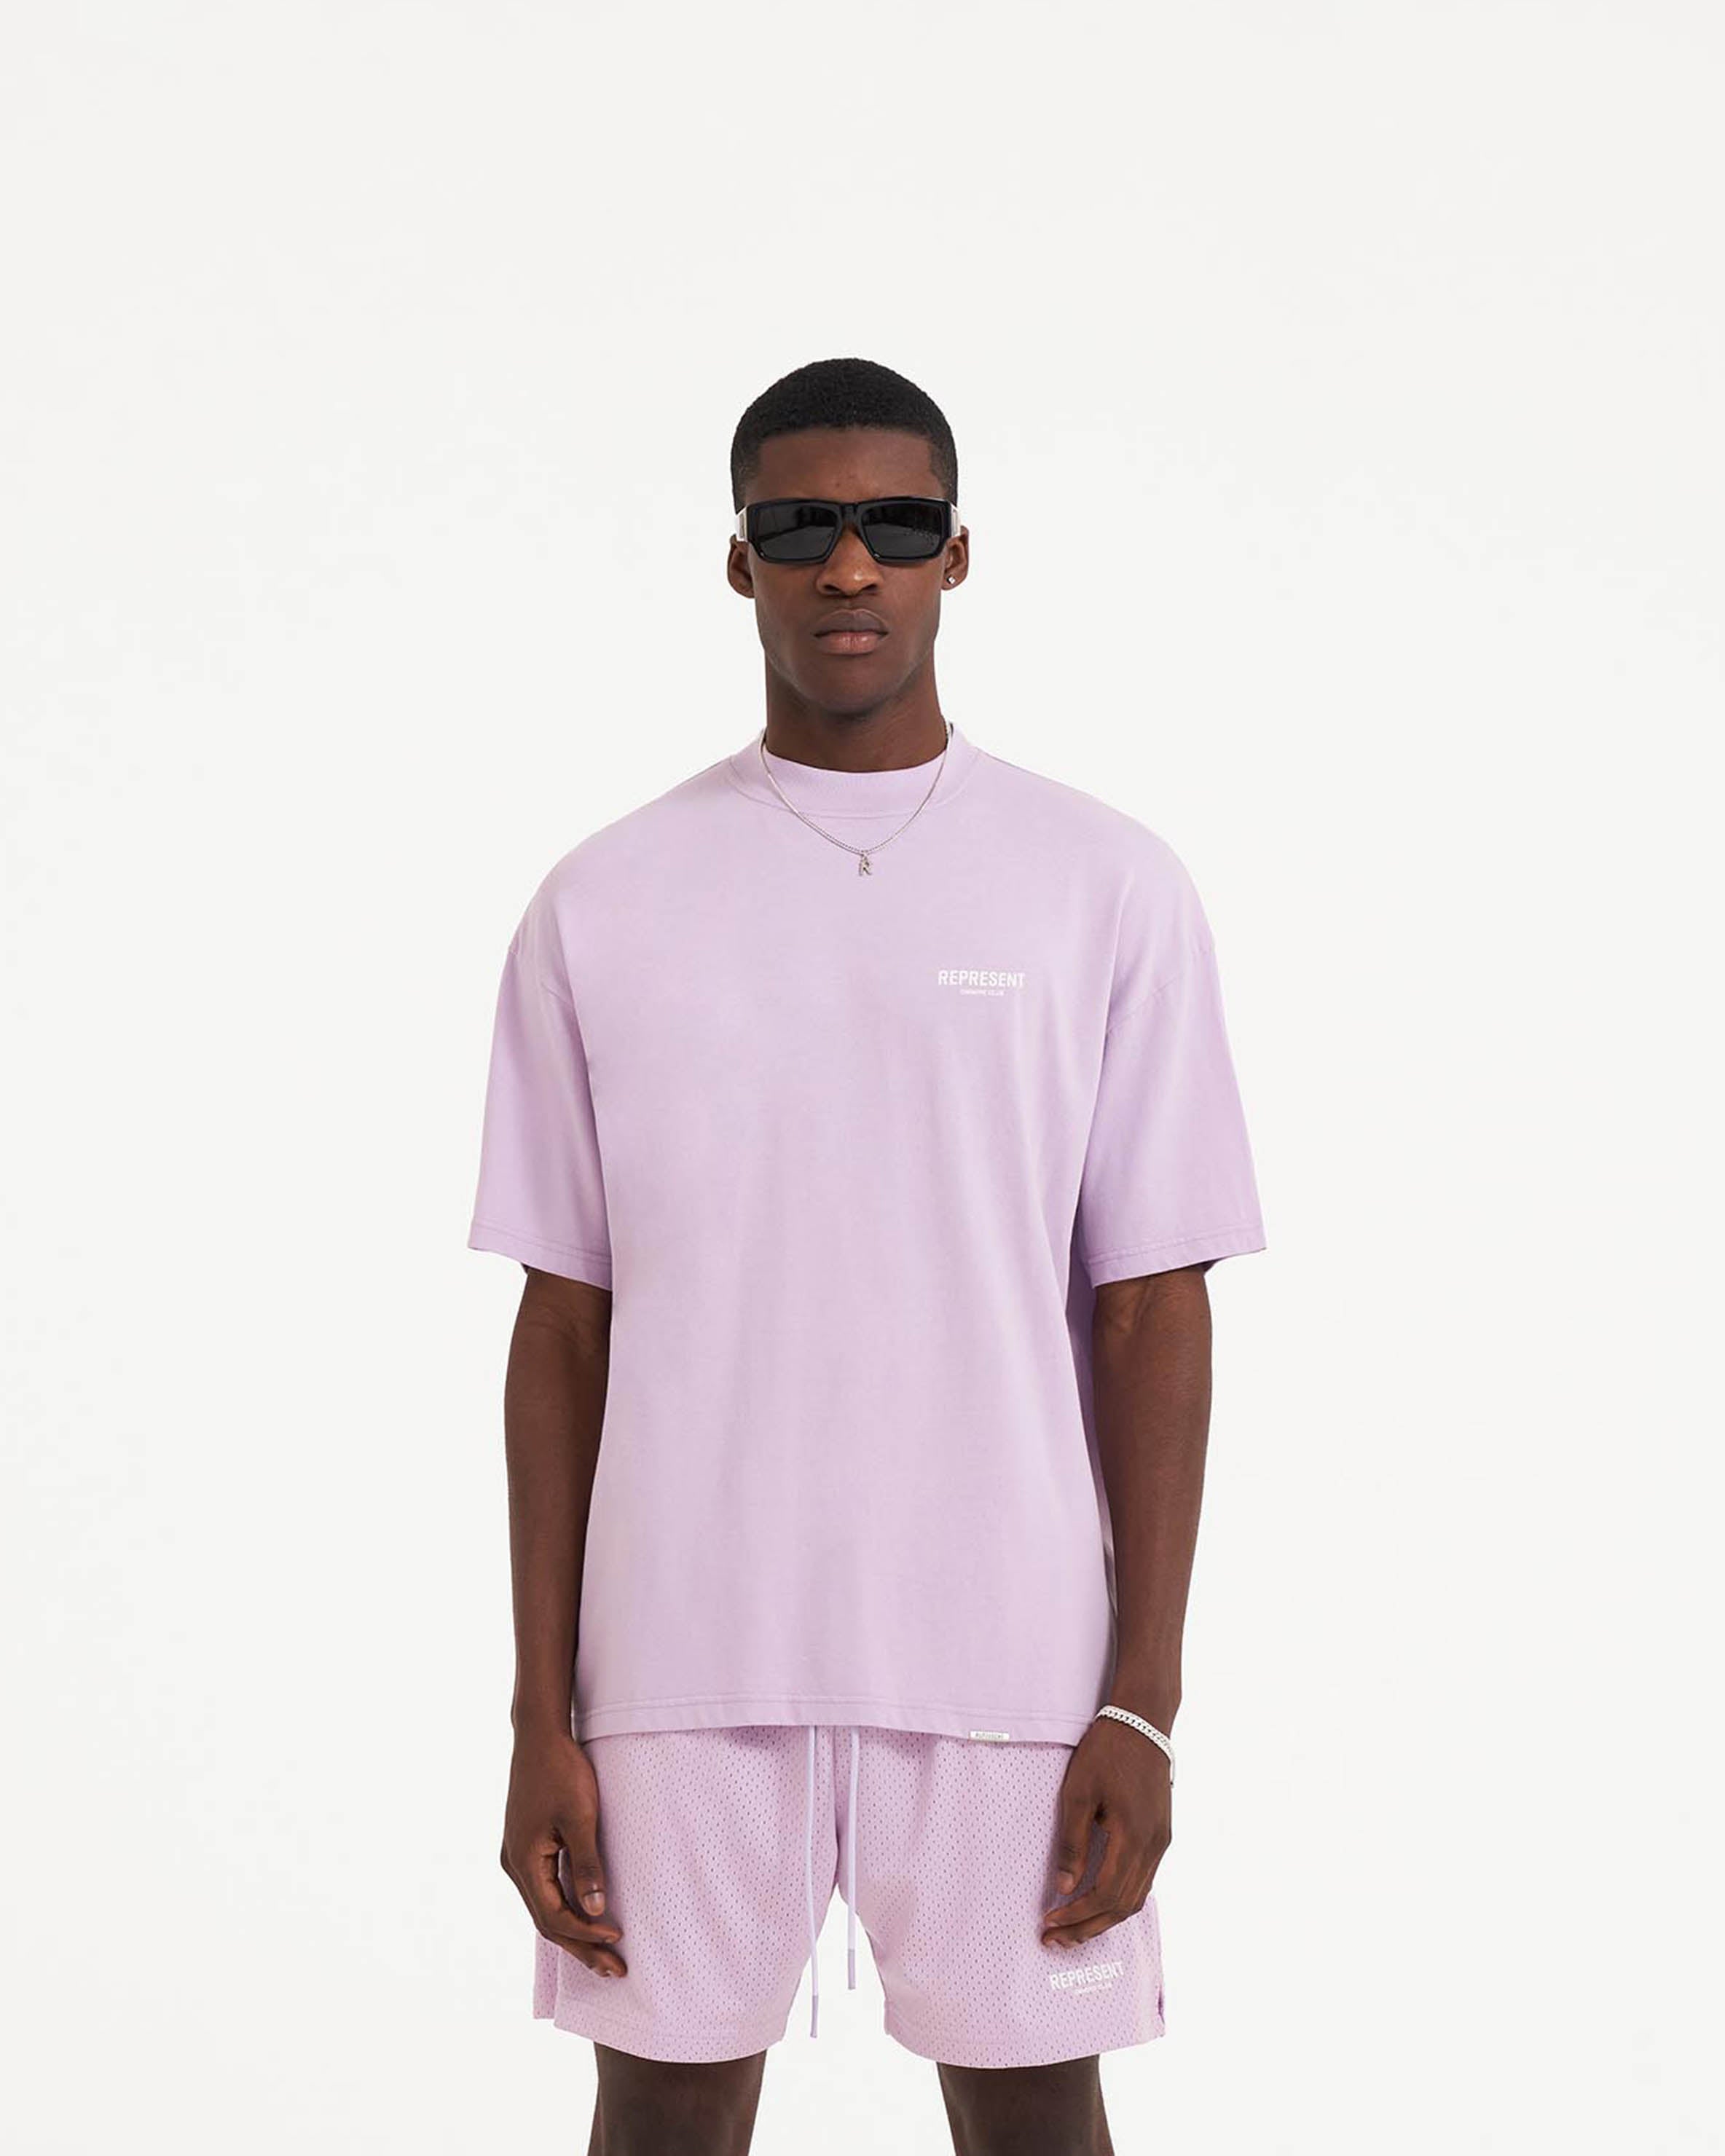 trug ungdomskriminalitet Til meditation Lilac T-Shirt | Owners' Club | REPRESENT CLO